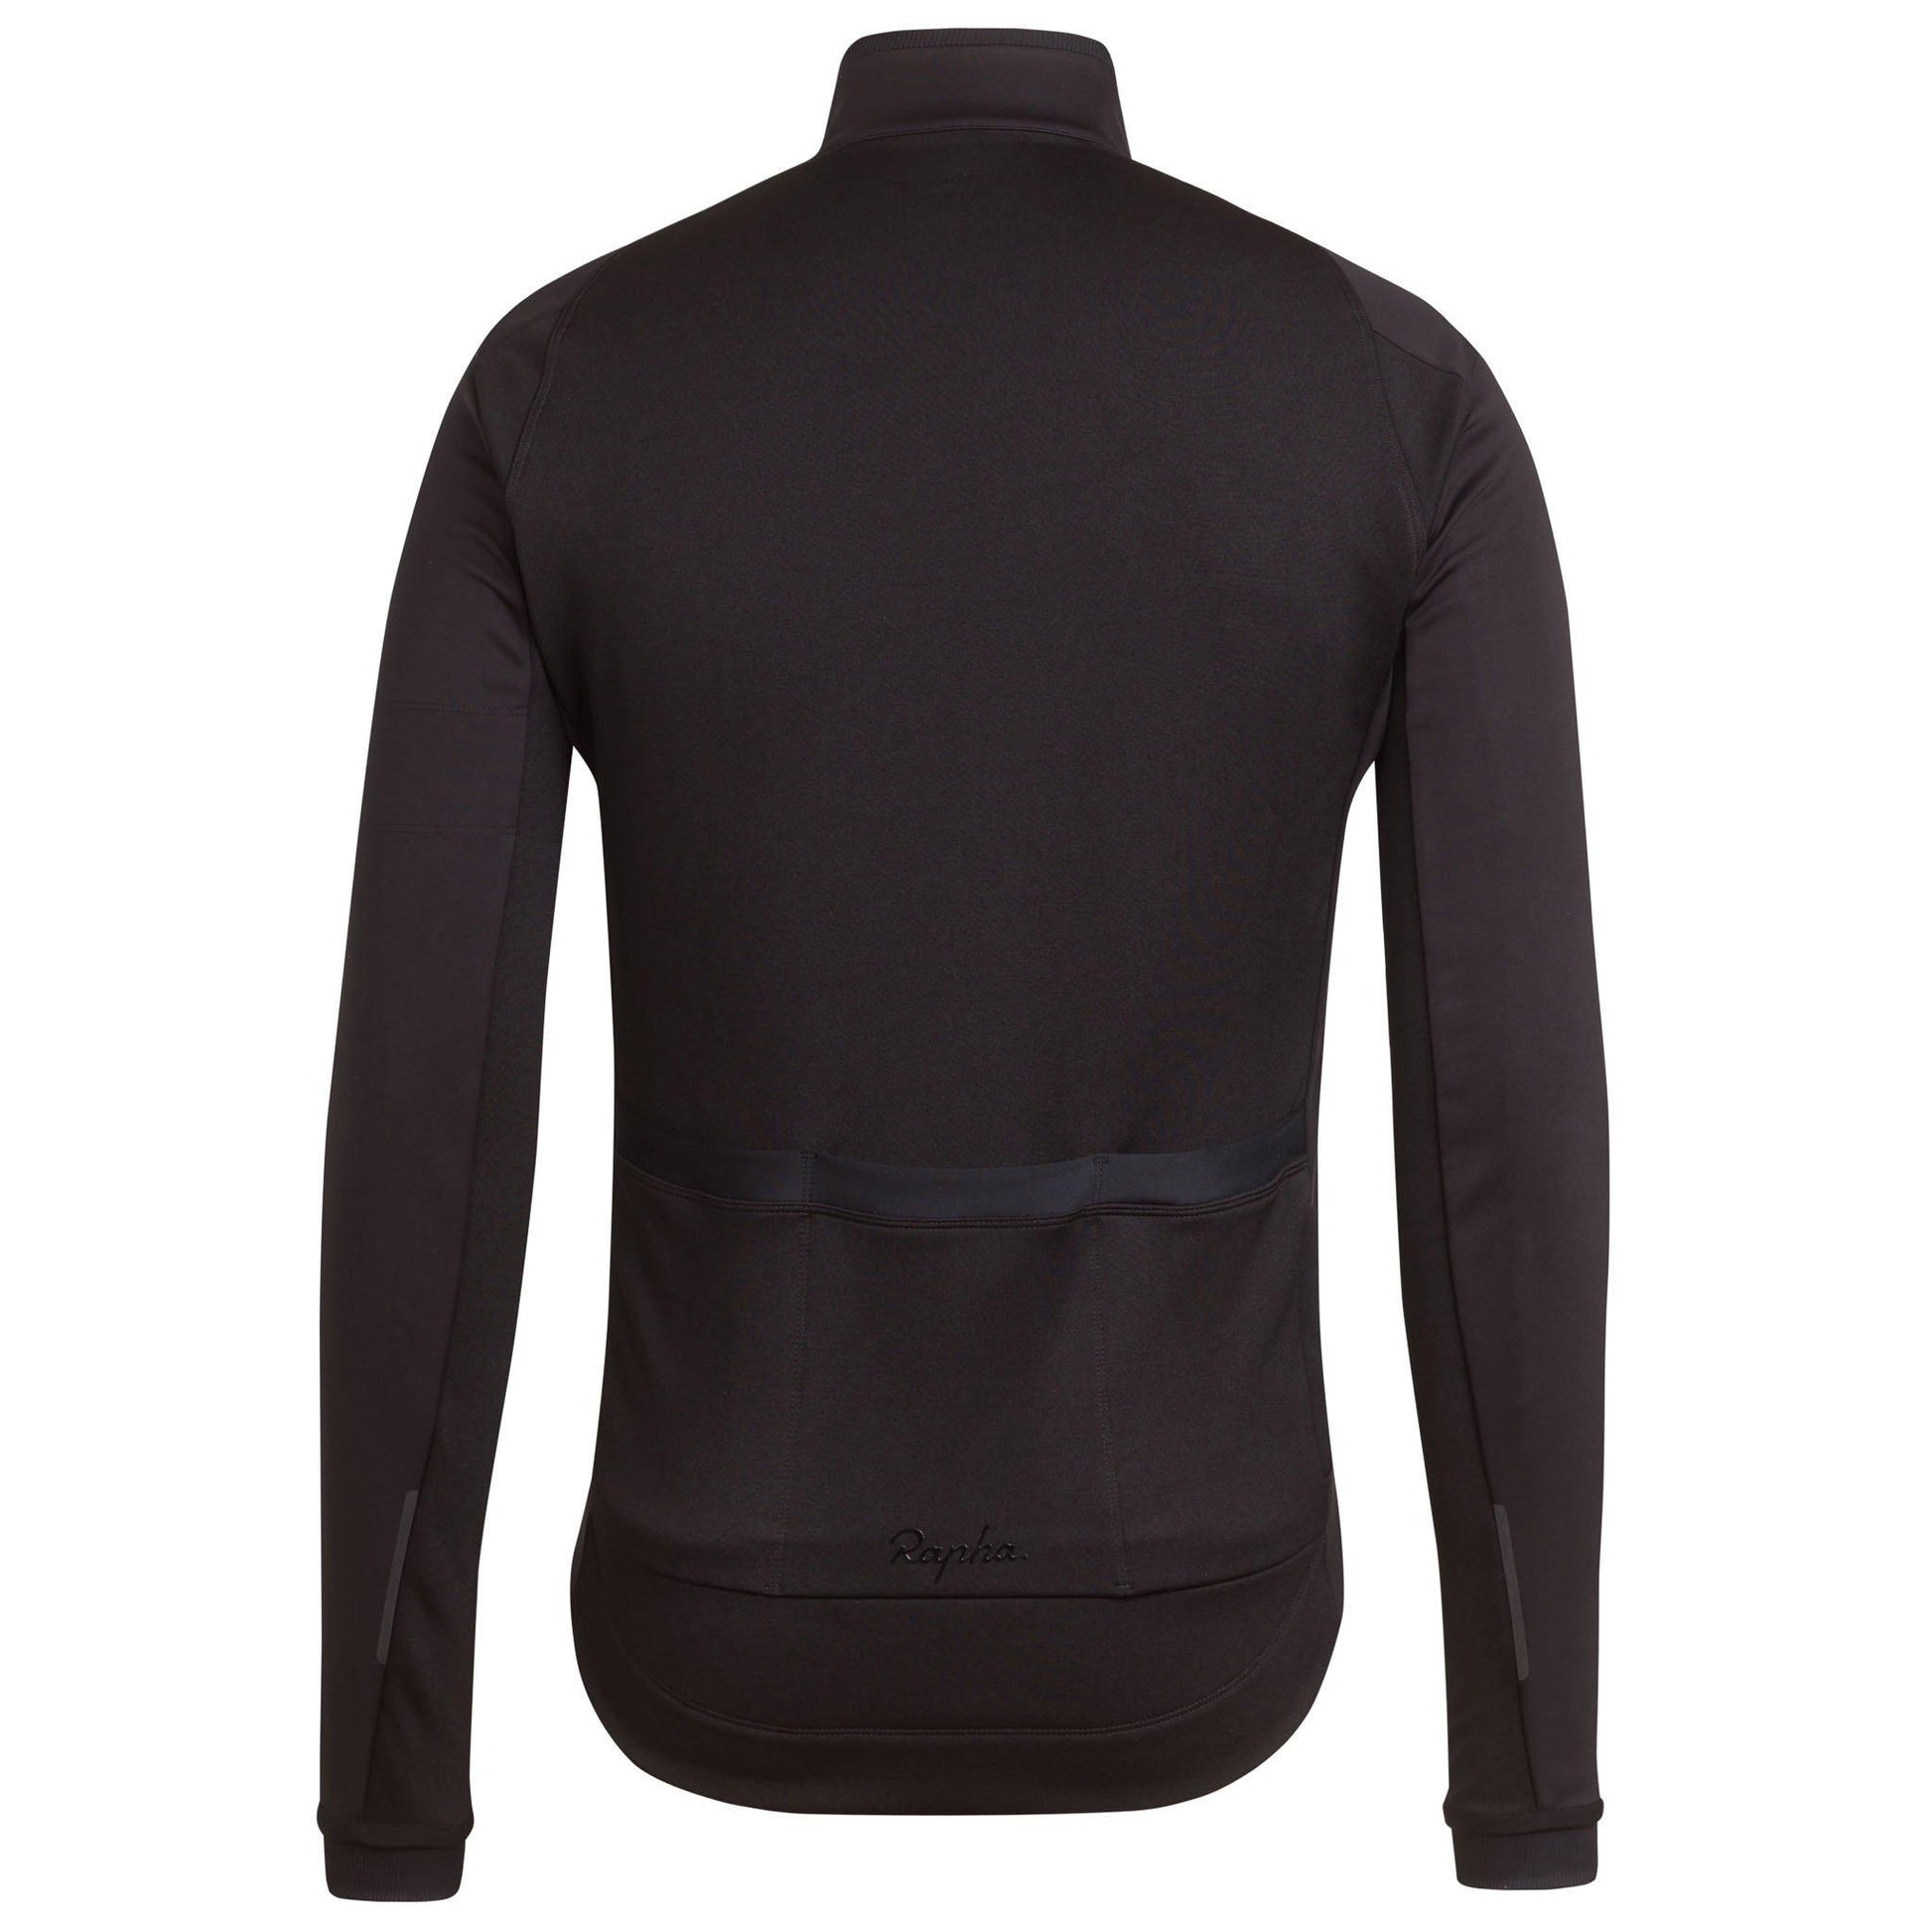 https://woolyswheels.com.au/cdn/shop/products/rapha-core-winter-jacket-black-2.jpg?v=1651620649&width=1946